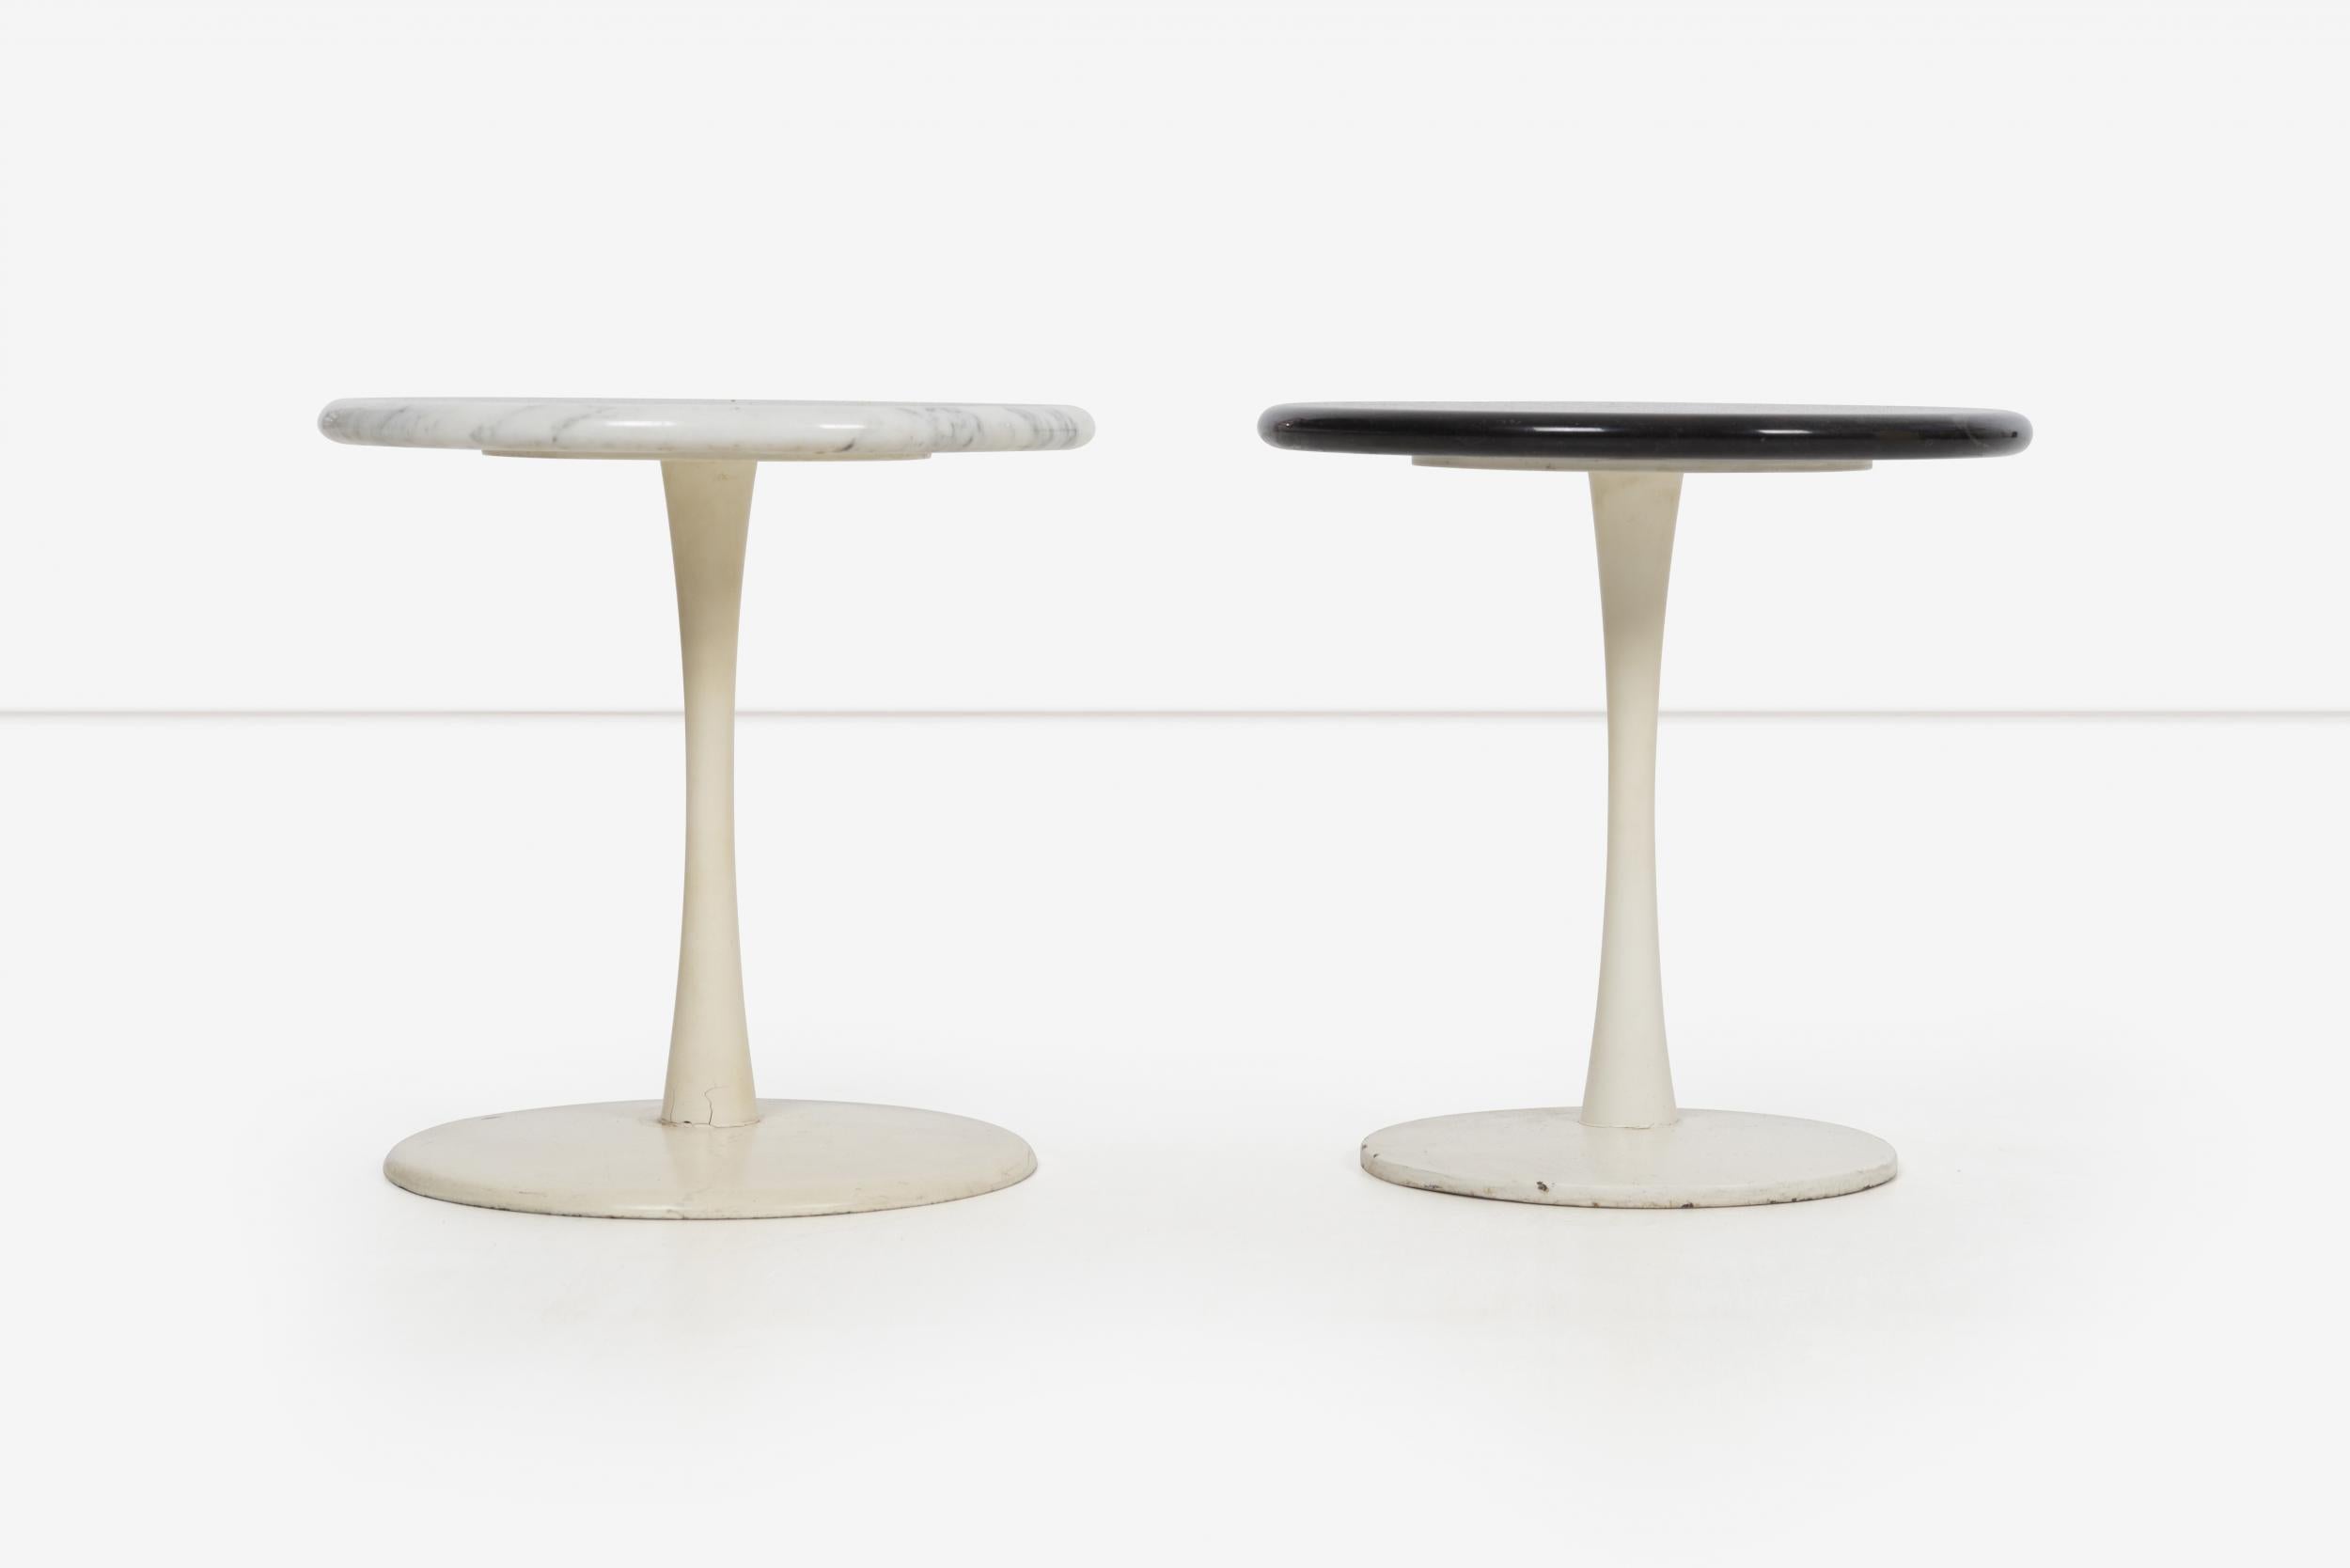 Paar Laverne Stem Tische für Laverne International, Modelle ST-12 und ST-2 gewichteten Gusseisen Basen matt weiß Finish mit massiven schwarzen und weißen 3/4 